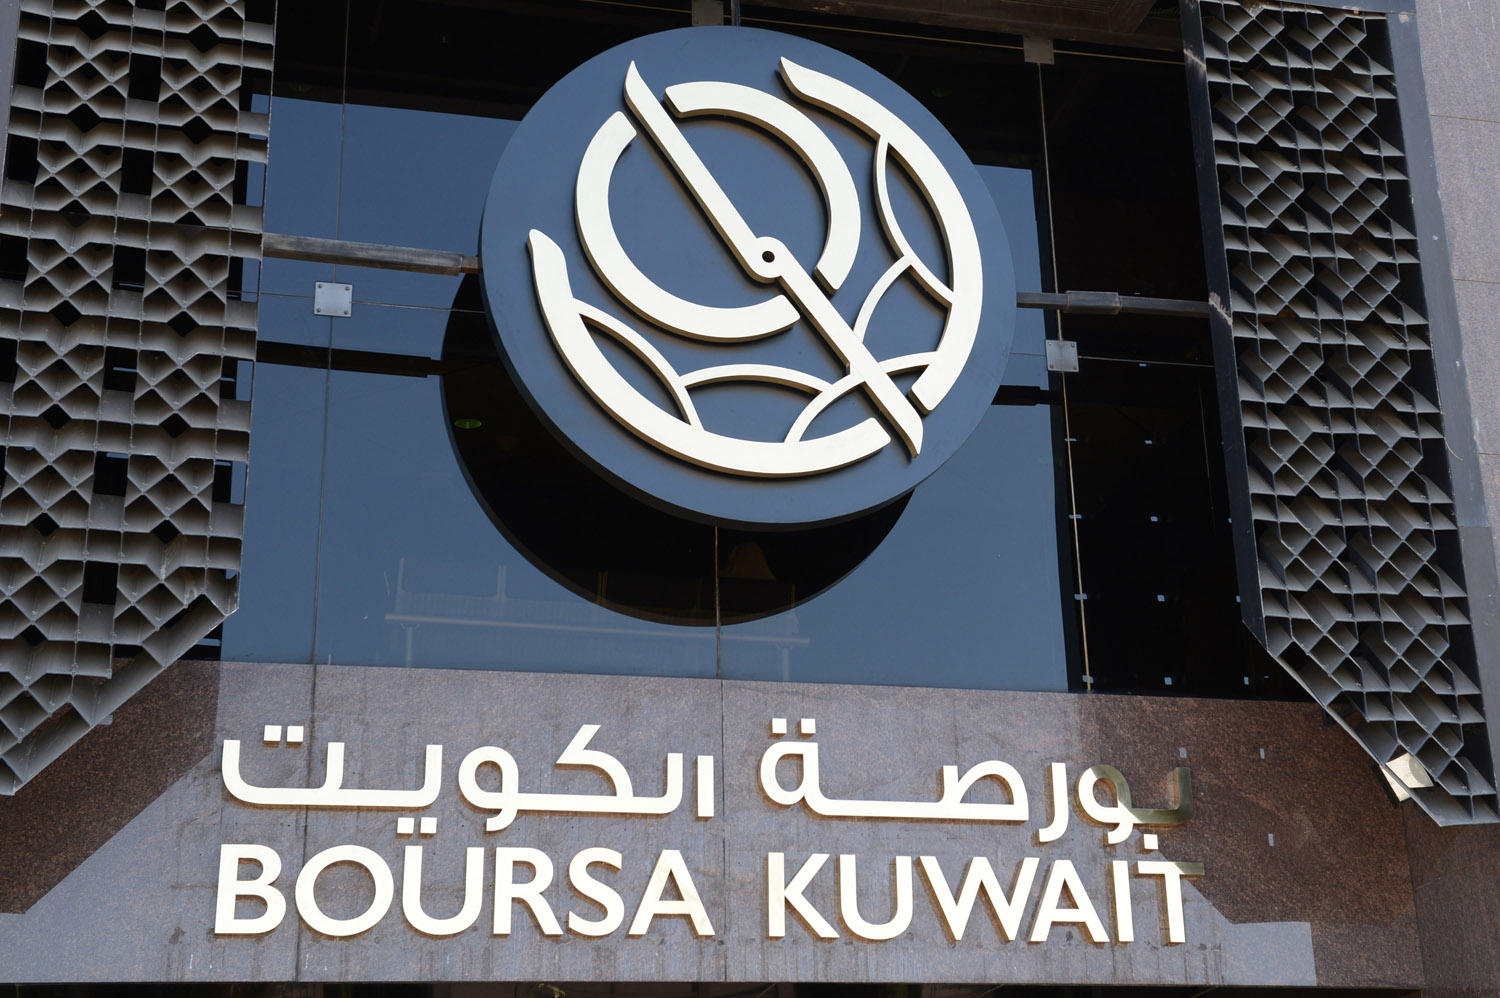 Kuwait bourse benchmark rises                                                                                                                                                                                                                             